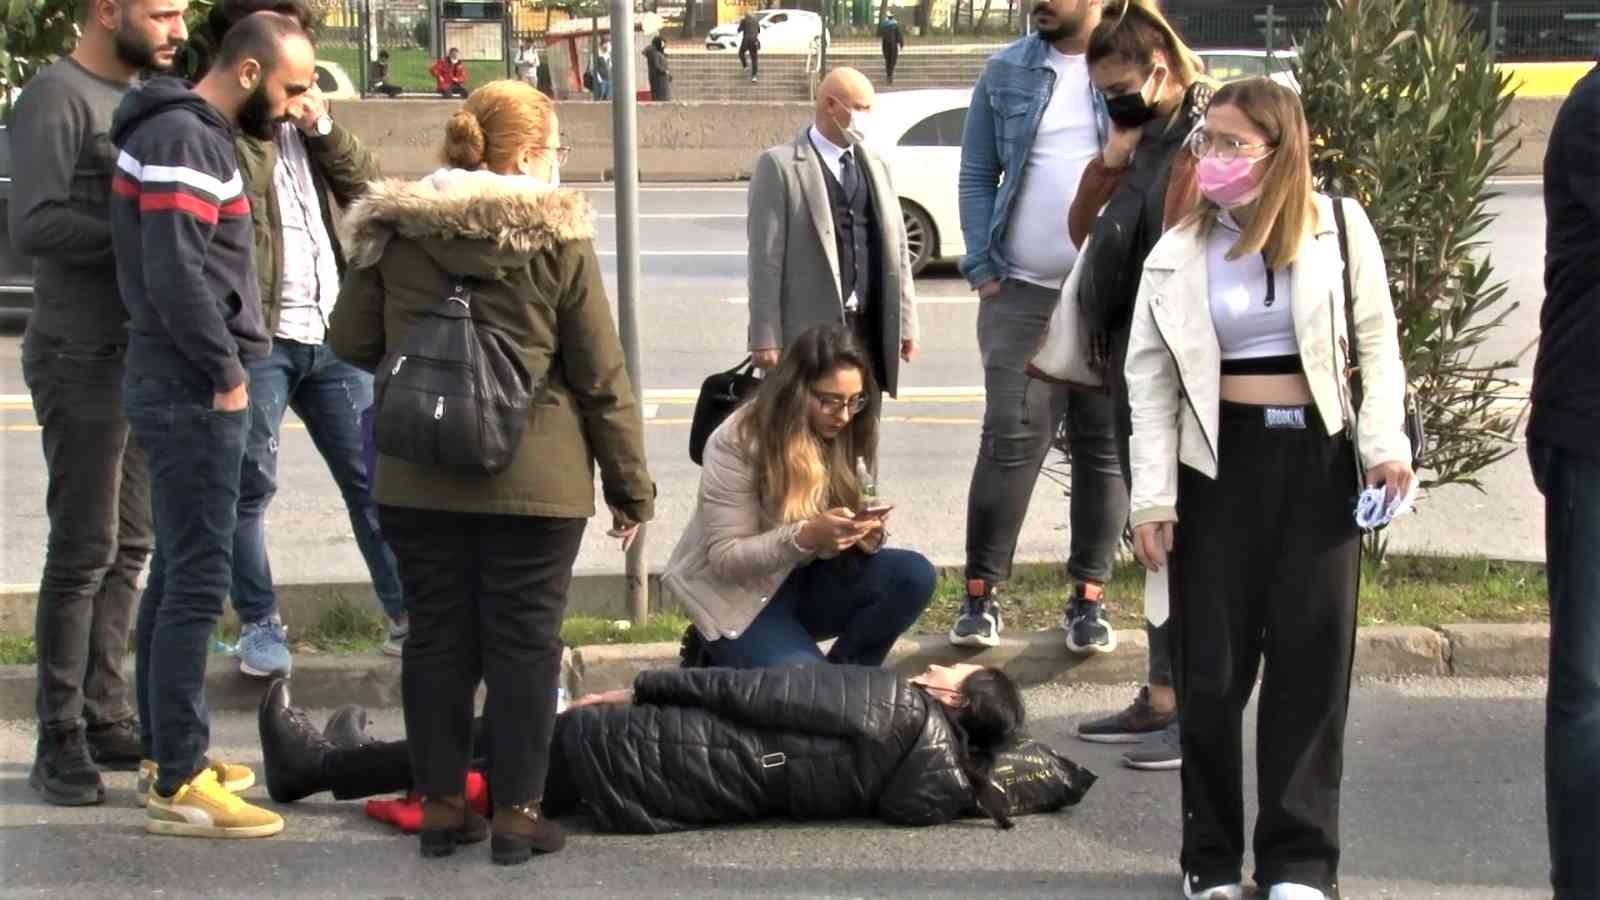 Kadıköy’de üniversiteli genç kız kaza yaptı, annesi yolda önlem alınmamasına tepki gösterdi #istanbul